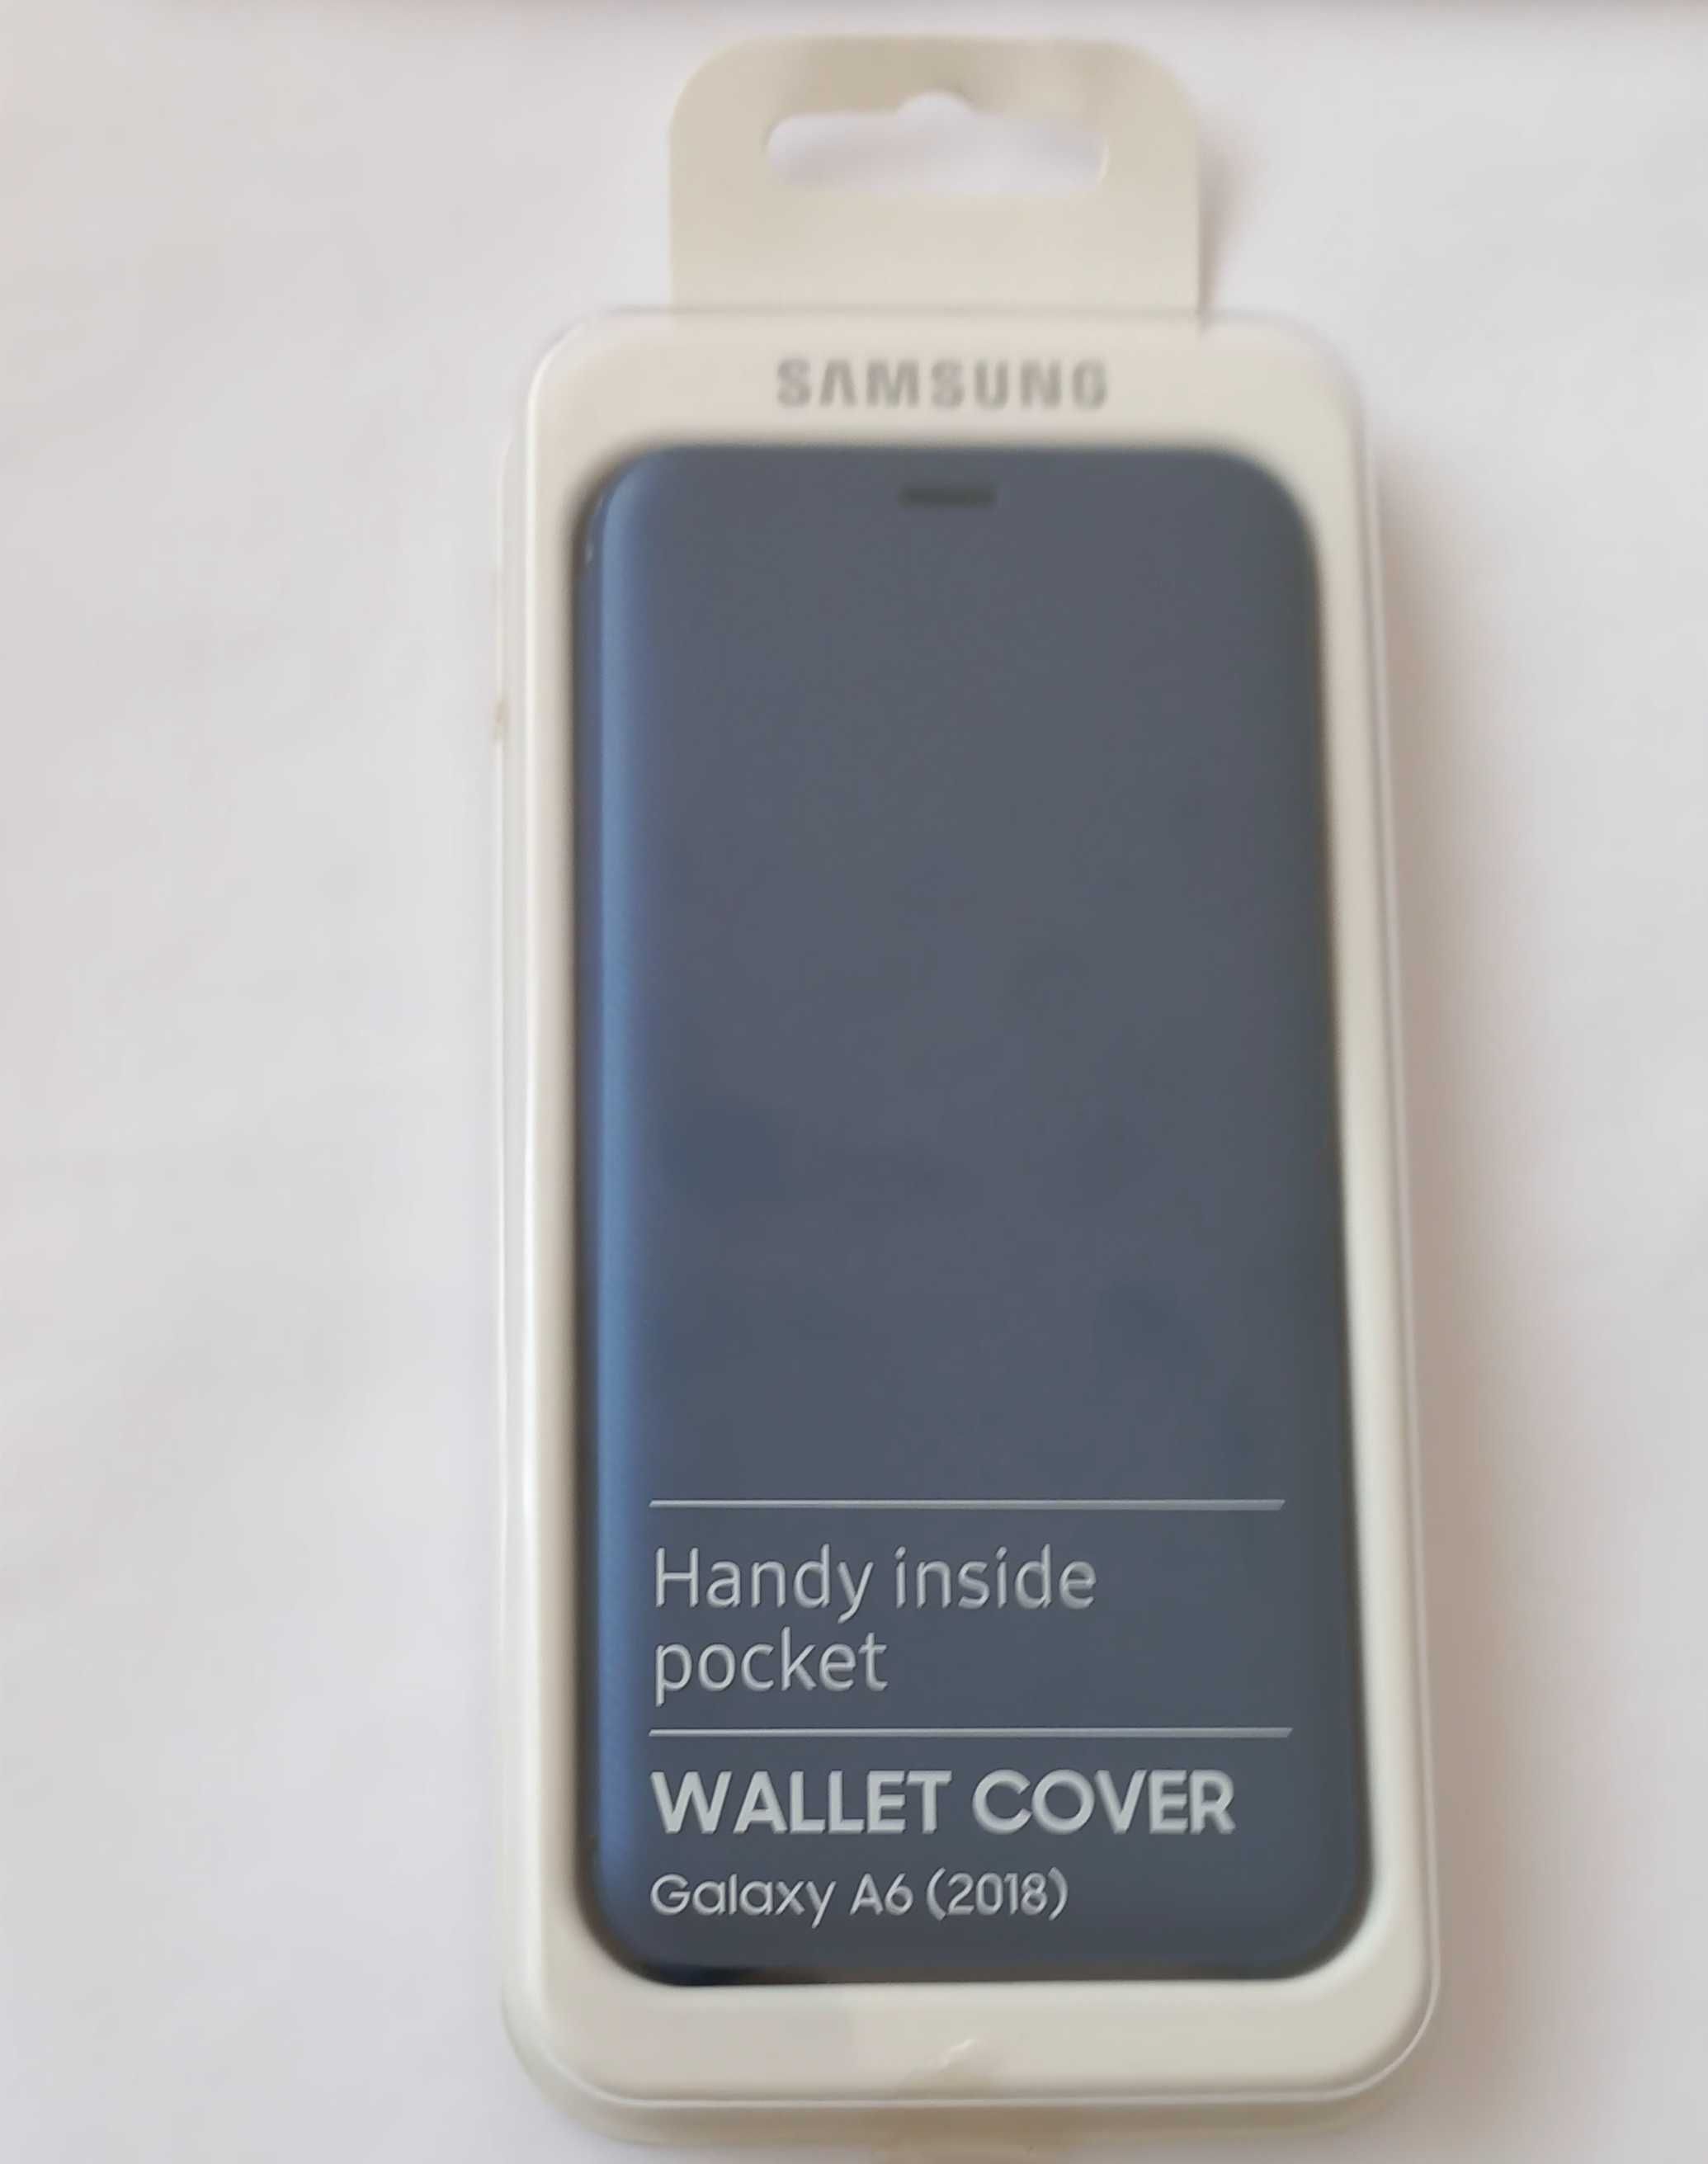 Capa Samsung Galaxy A6 Wallet Cover 2018, em muito bom estado